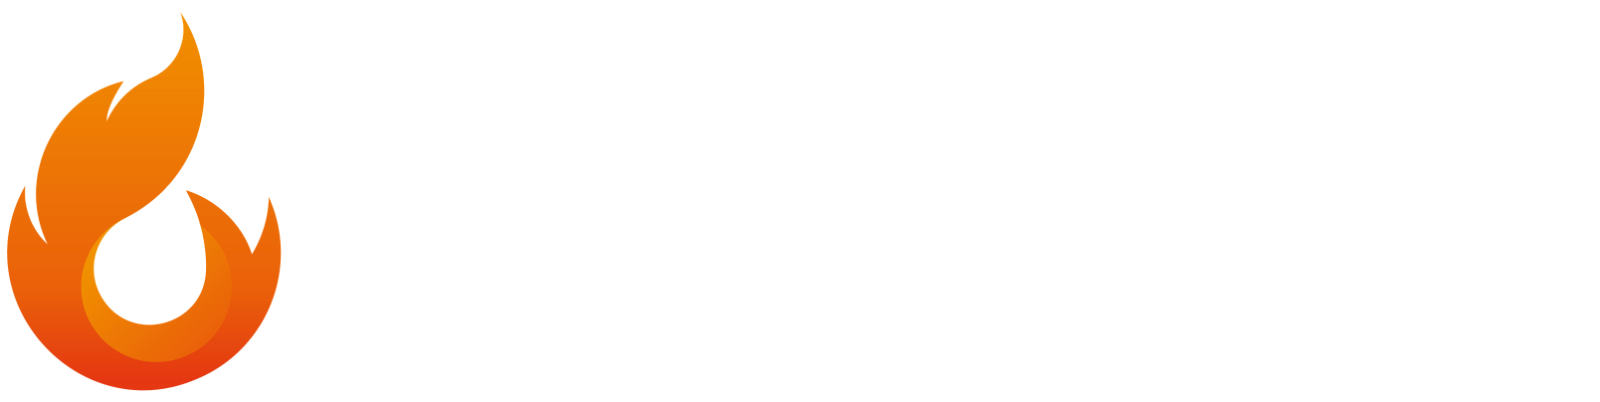 CynderHost